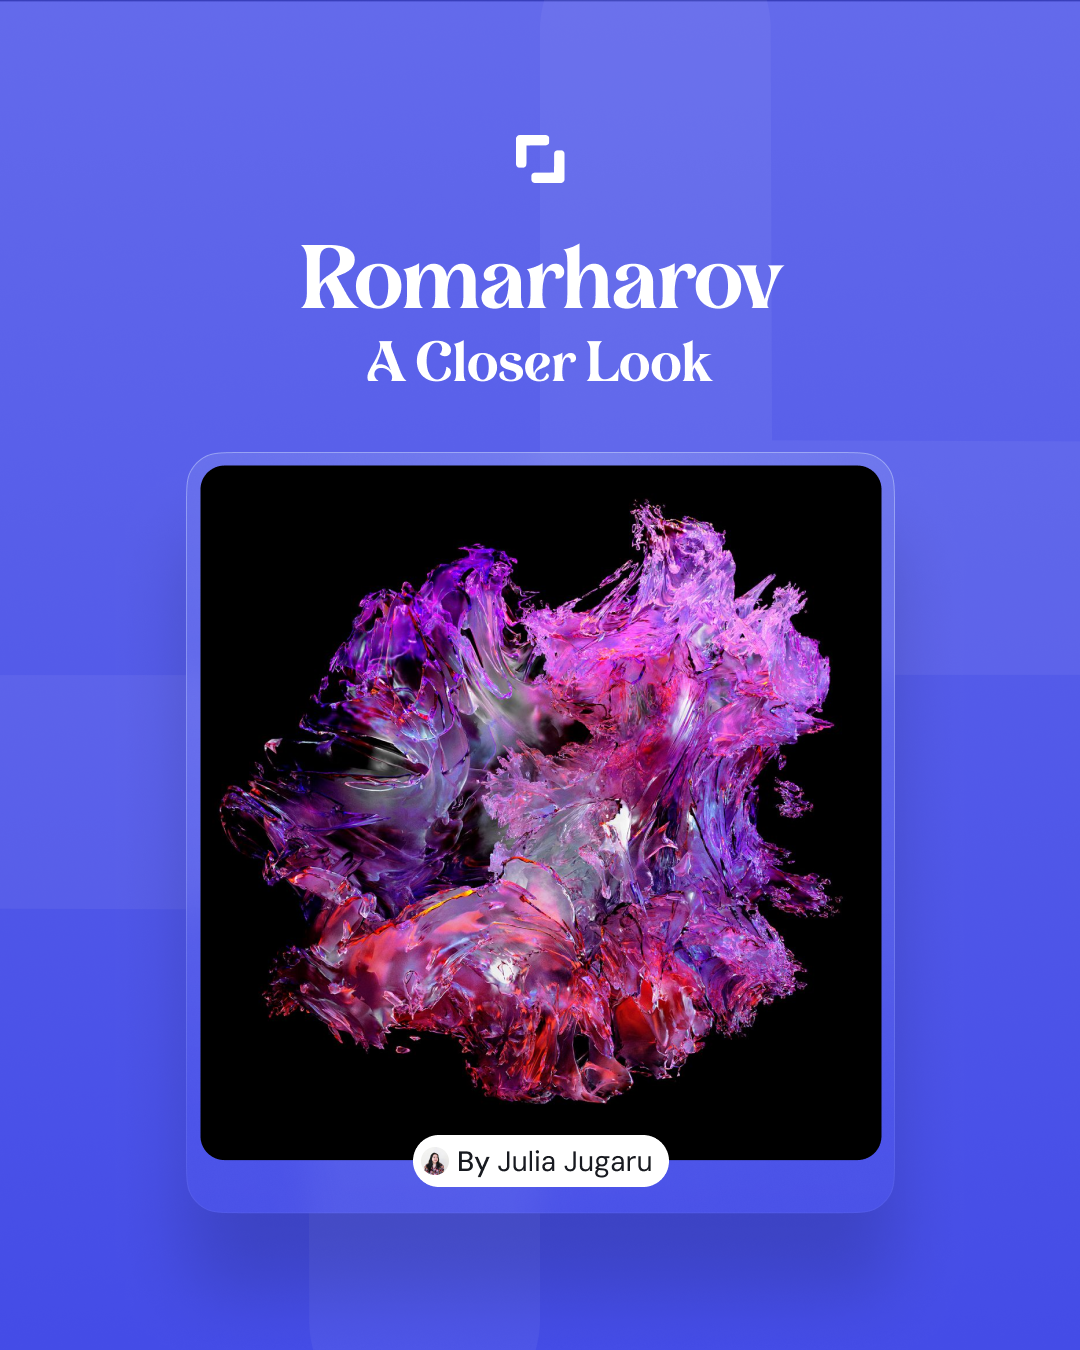 romarharov: A closer look